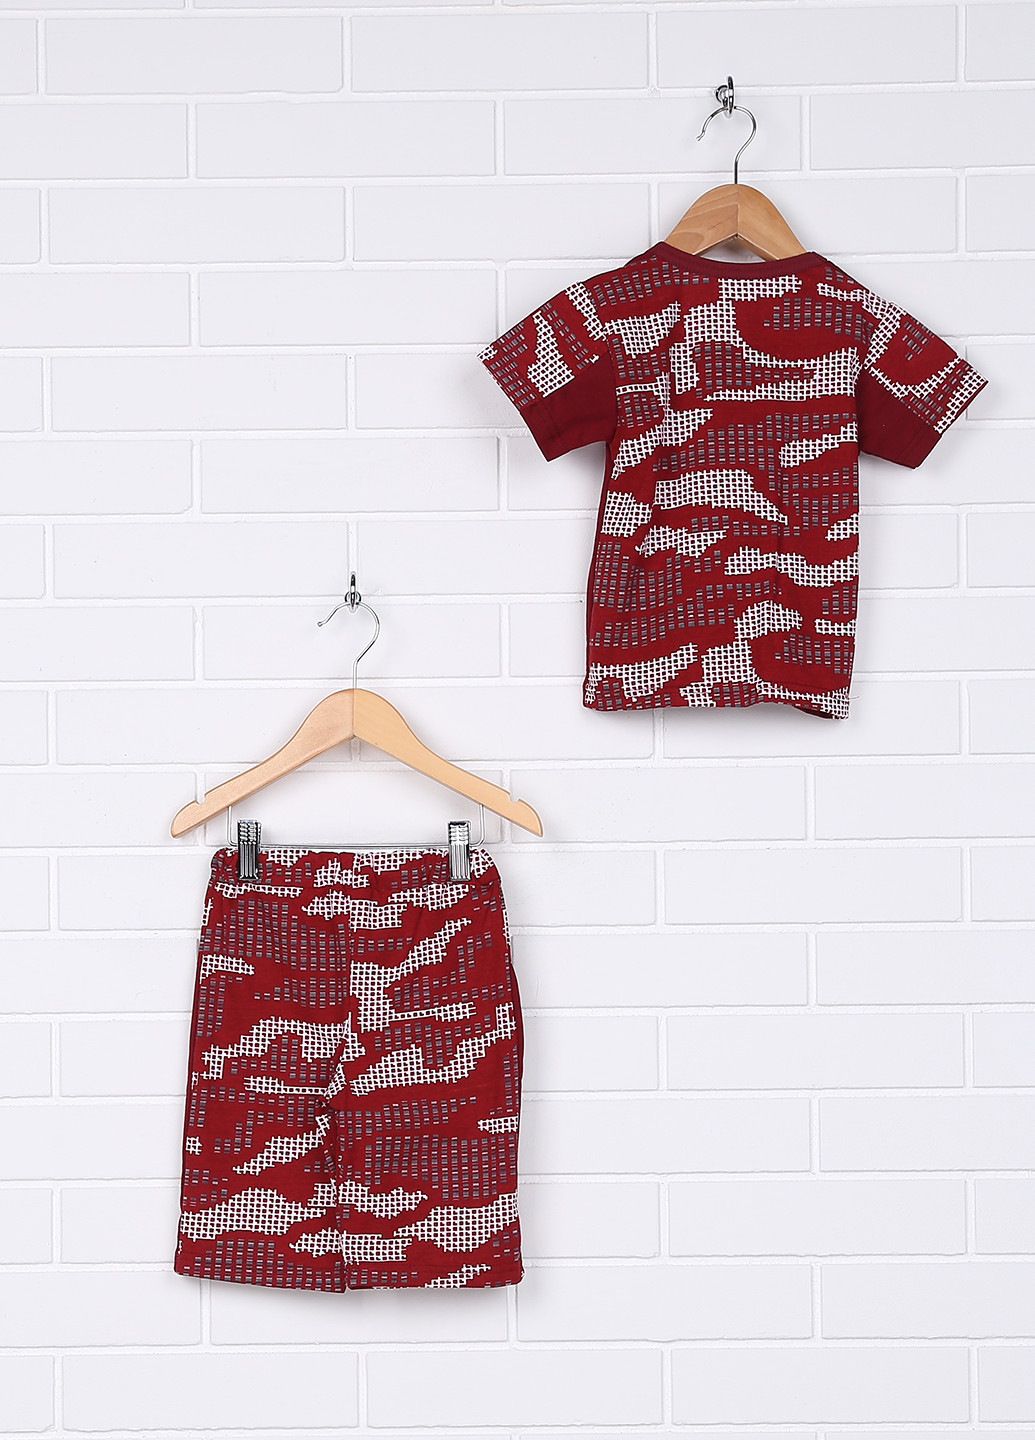 Бордовый летний комплект (футболка, шорты) Baby Art